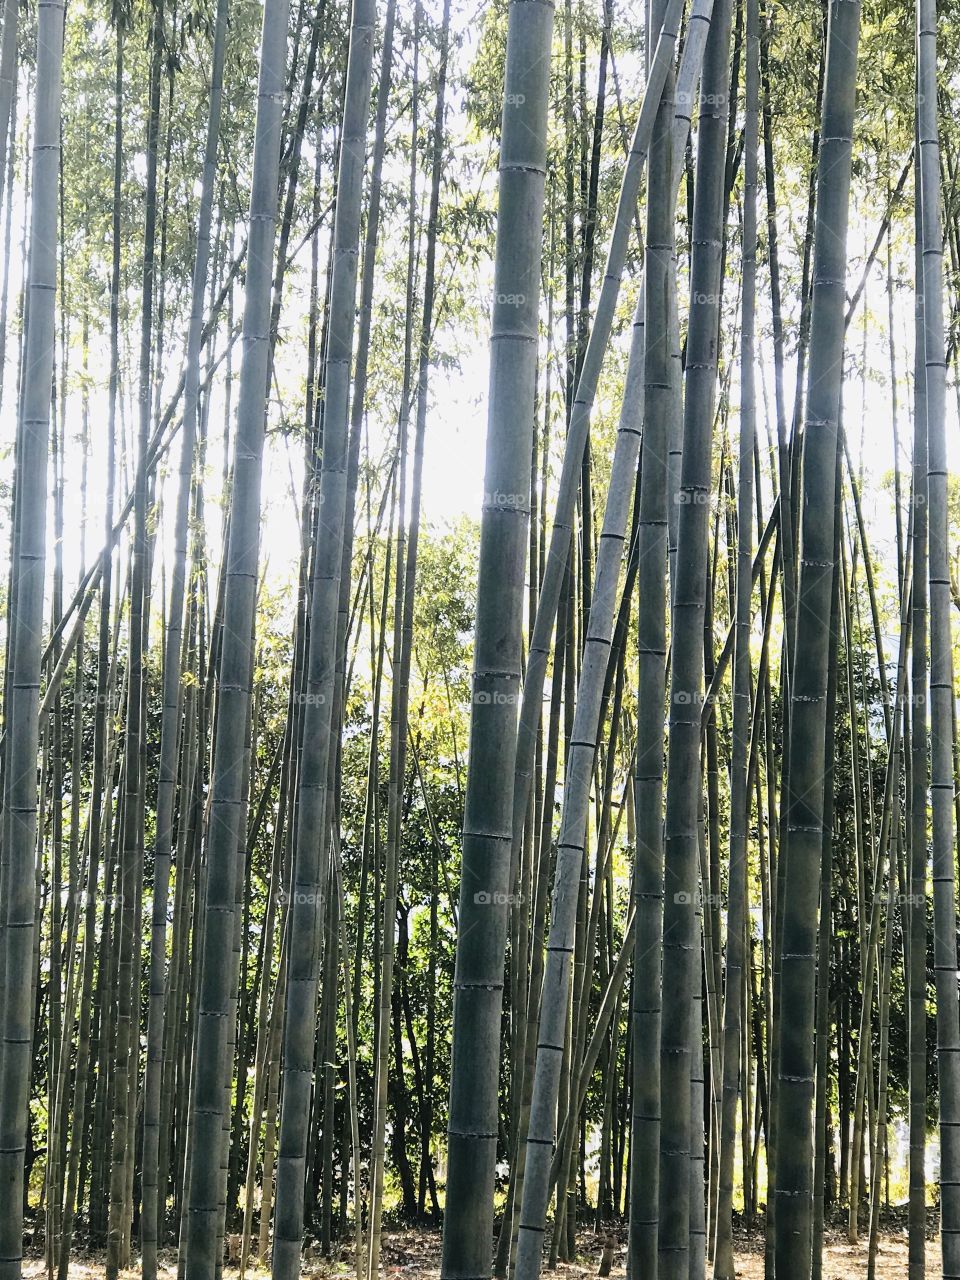 Peaceful bamboos